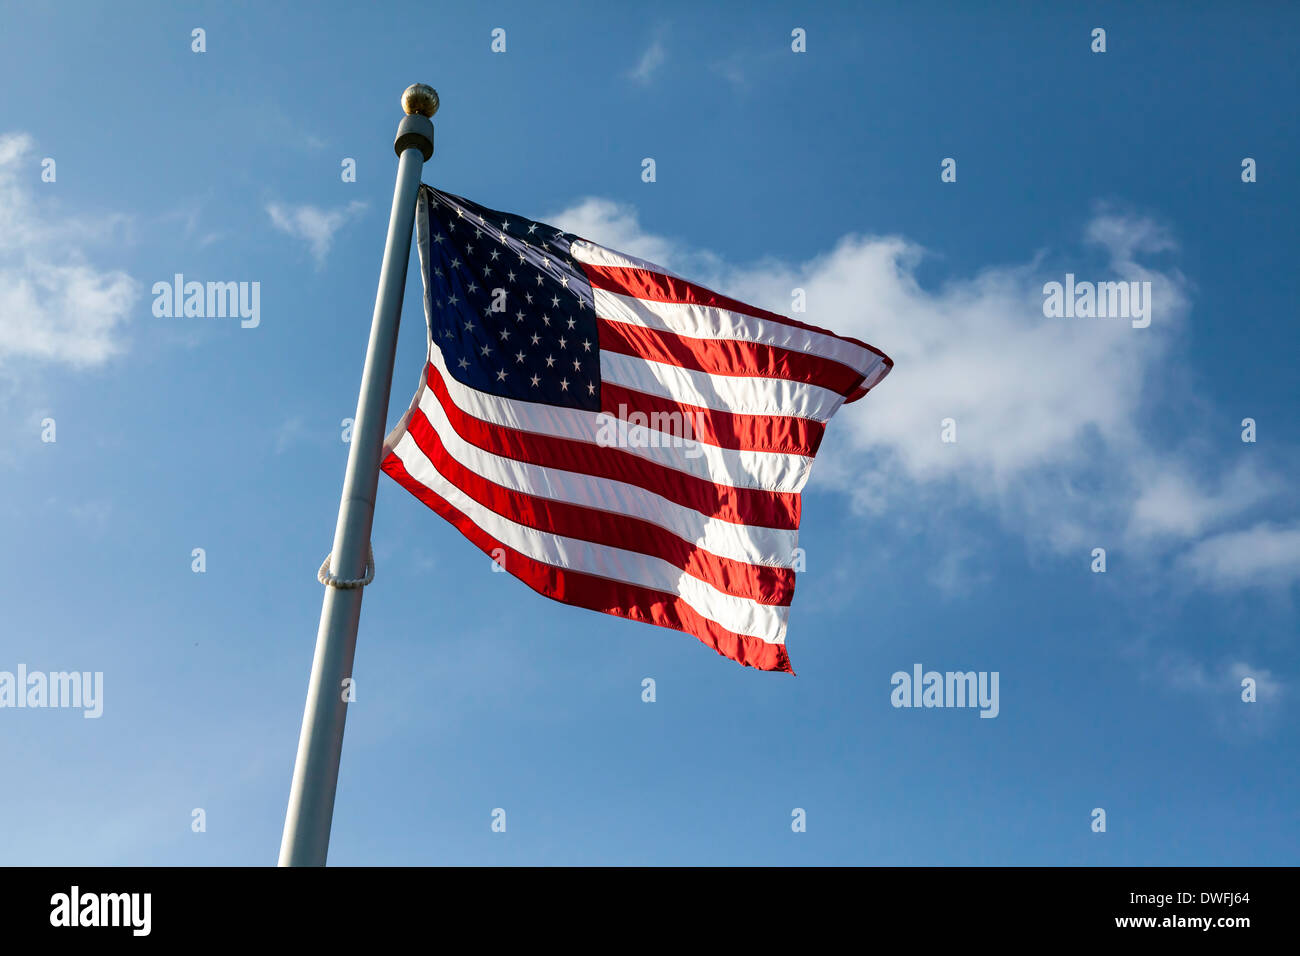 Drapeau américain également connu sous le nom de Old Glory ou Stars and Stripes vagues au sommet d'un mât contre un ciel bleu et nuages blancs. USA Banque D'Images